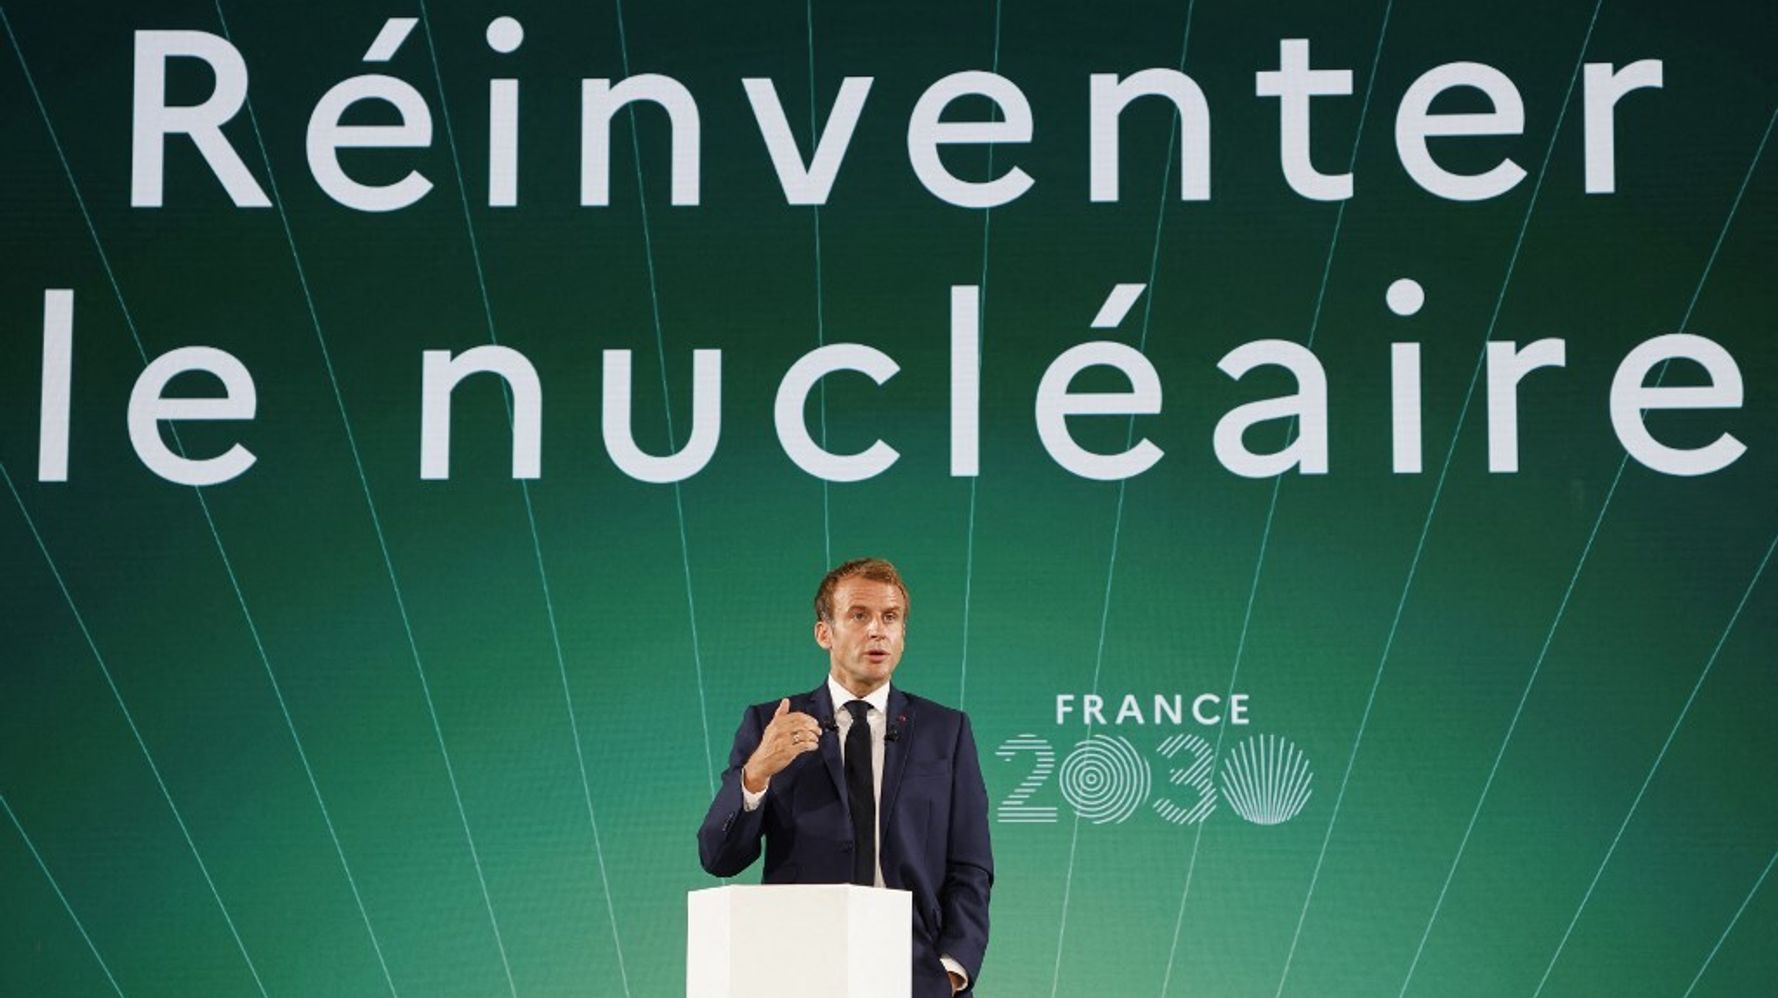 Macron attendu à Belfort pour annoncer de nouveaux réacteurs nucléaires